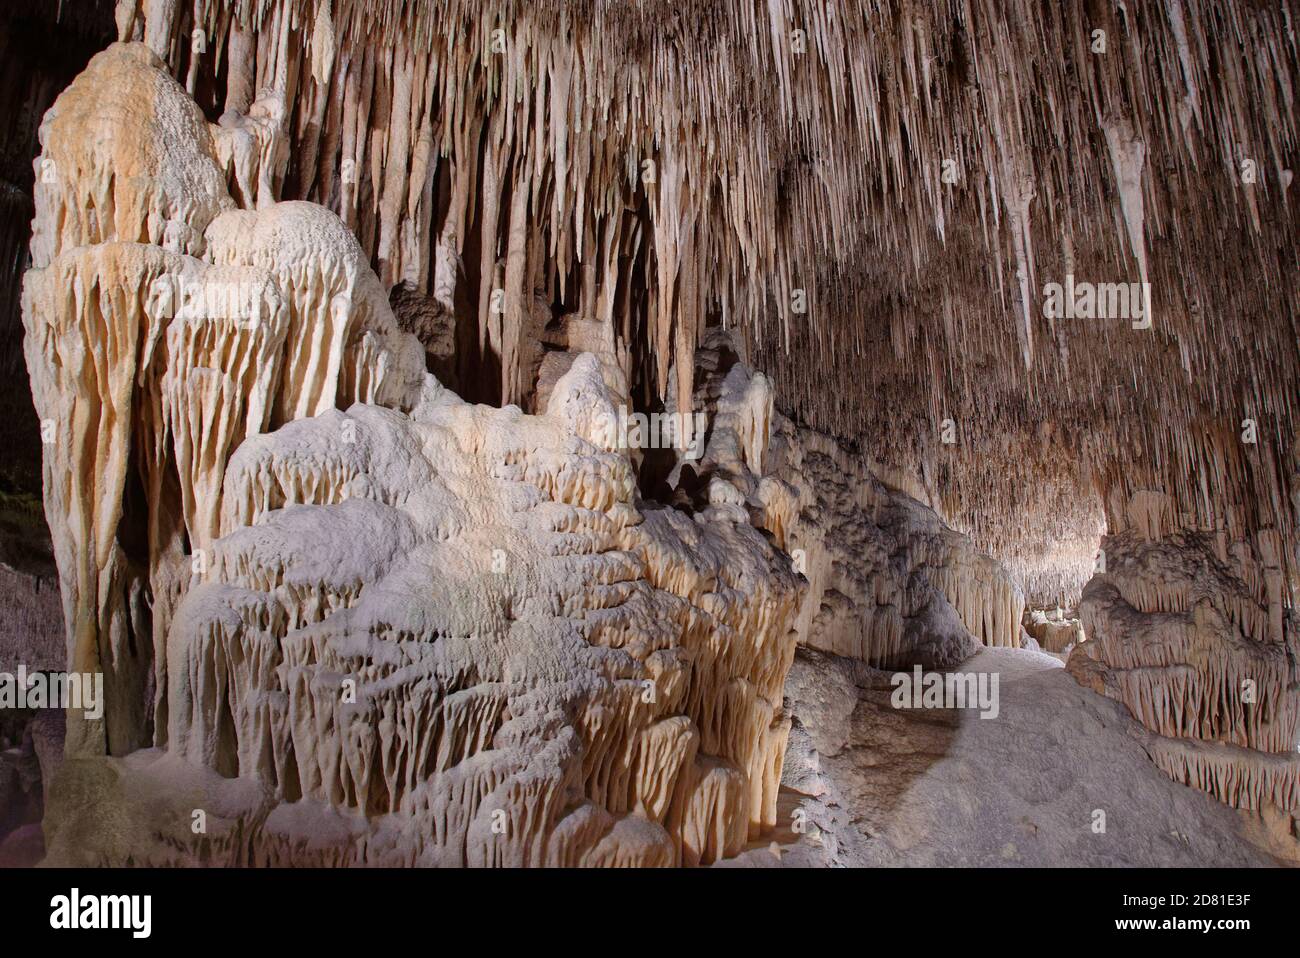 Grotte de calcaire avec colonnes ornées formées par des stalactites suspendues et des stalagmites montantes coalescents, grottes de Drach / Cuevas del Drach, Majorque. Banque D'Images